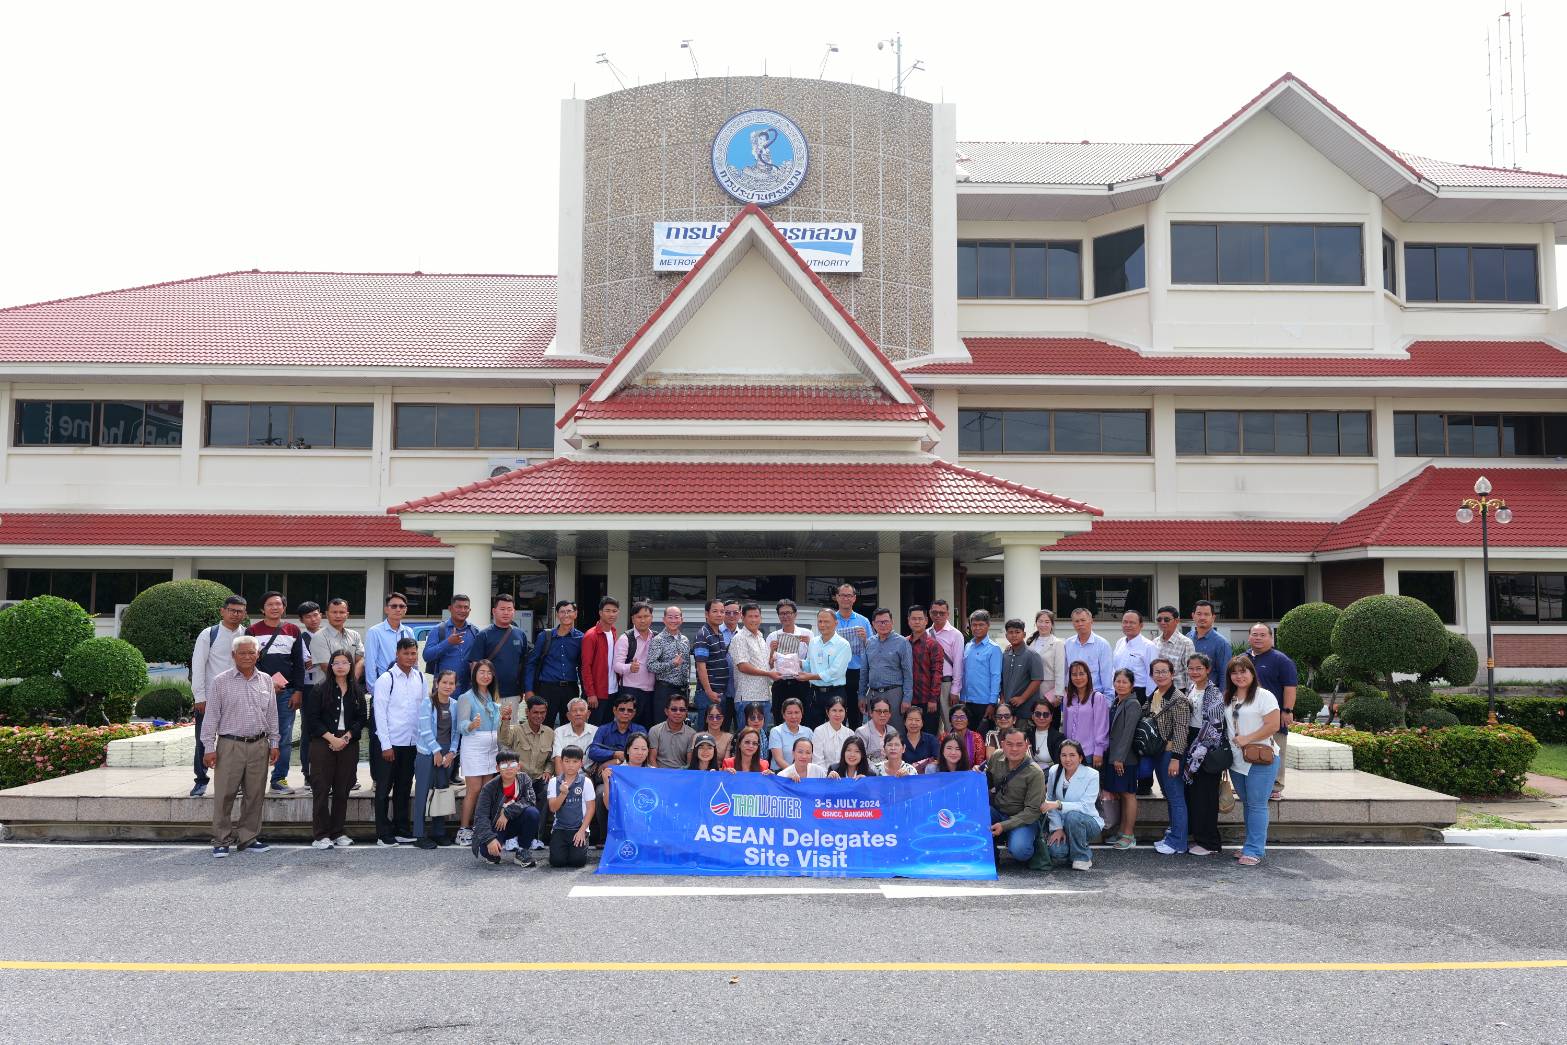 กปน. เปิดบ้านต้อนรับคณะผู้แทนจาก Cambodia Water Supply Association (CWSA) ศึกษาดูงานโรงงานผลิตน้ำมหาสวัสดิ์